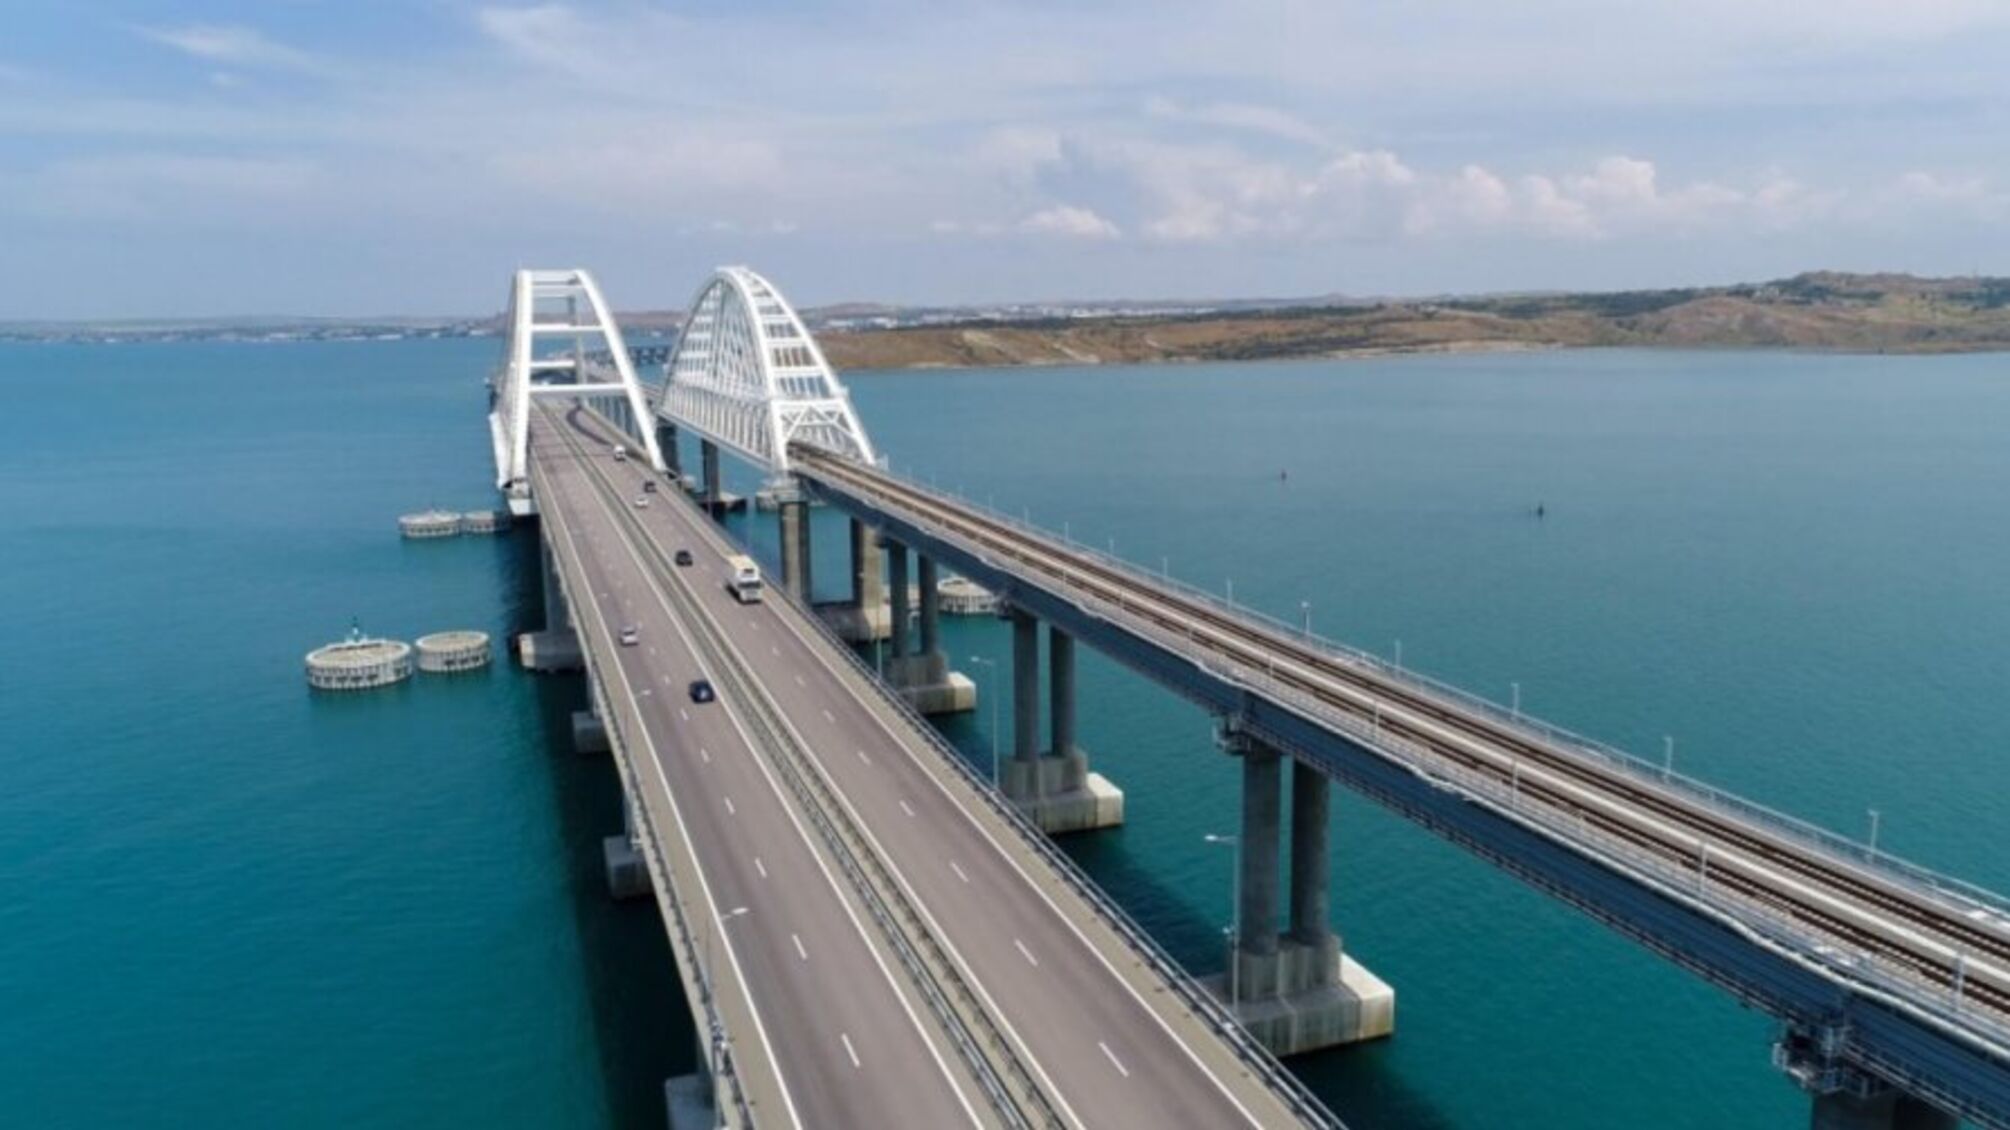 Крымский мост перекрыт, в Севастополе раздается тревога, - рос СМИ